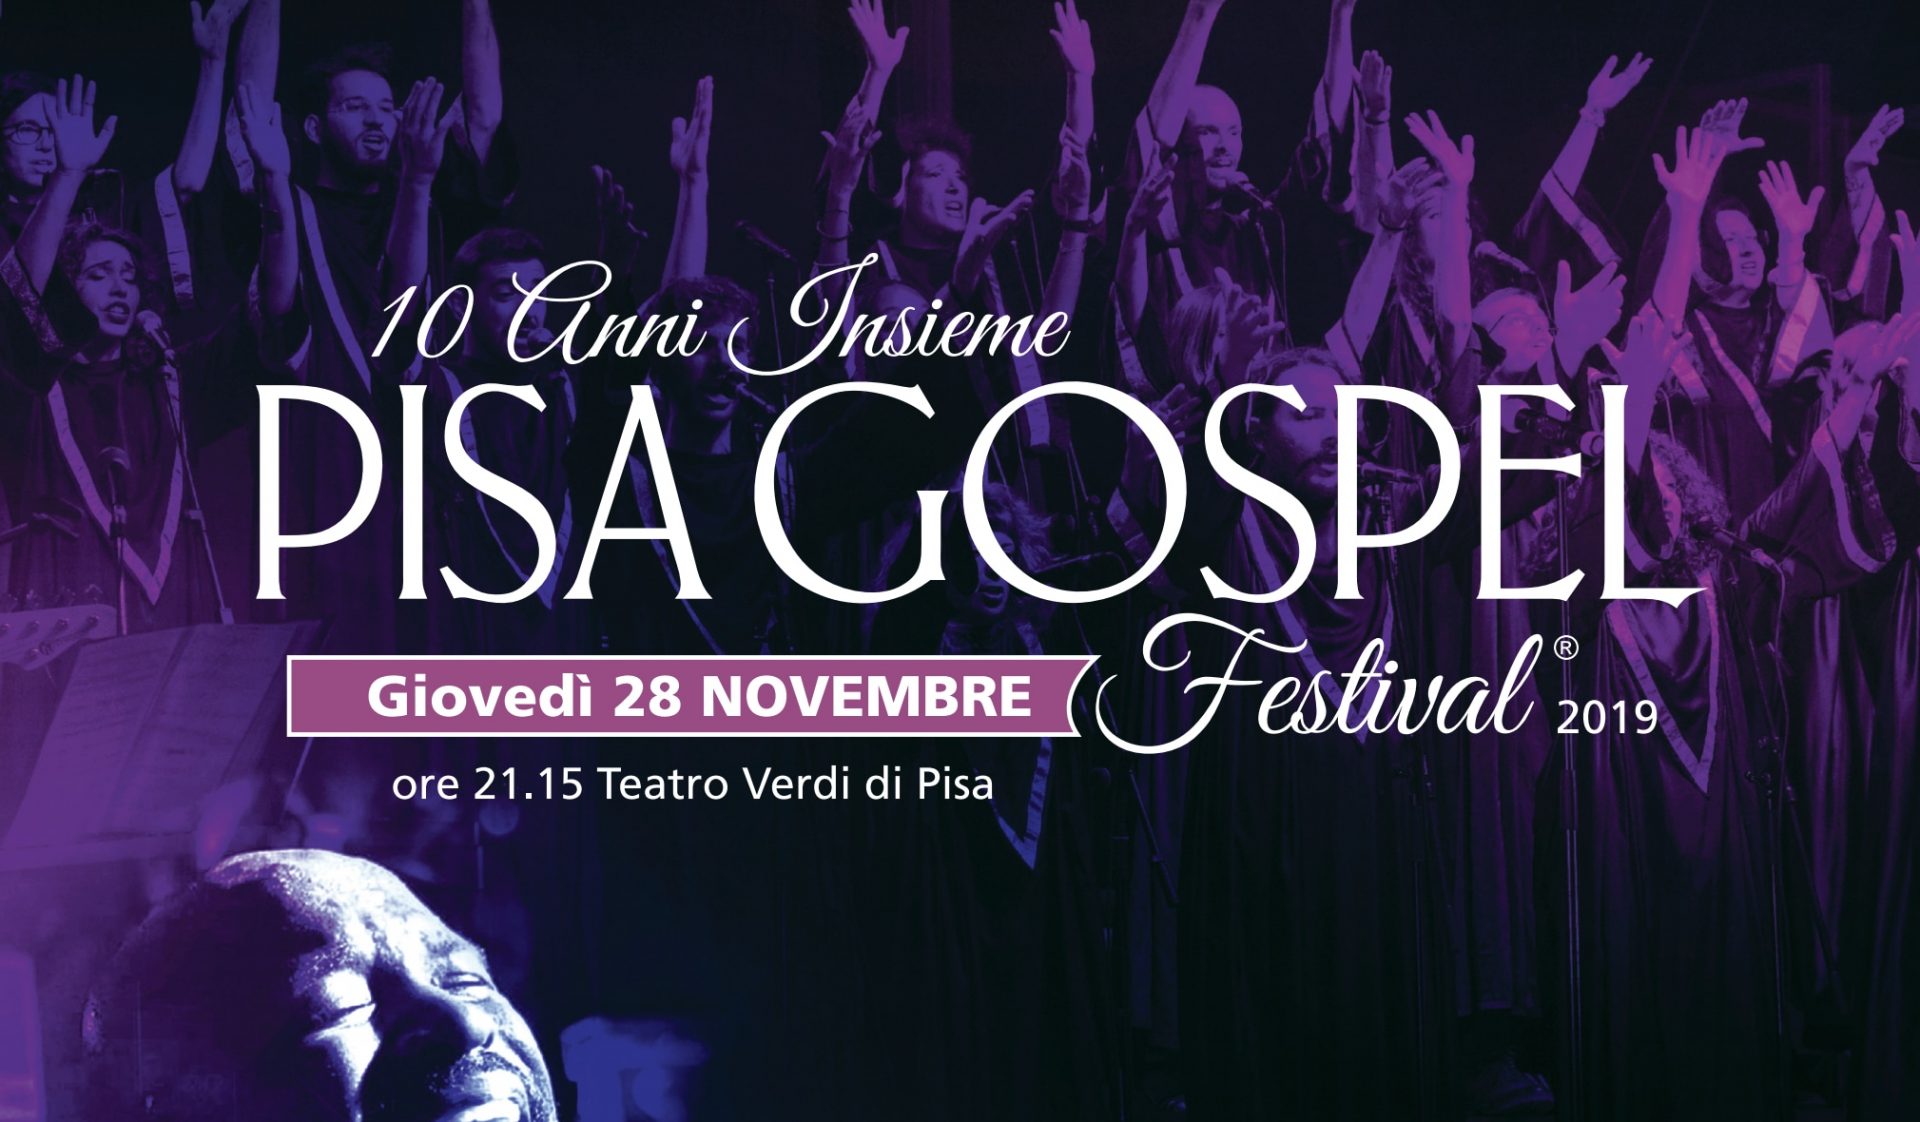 Pisa Gospel Festival la decima edizione